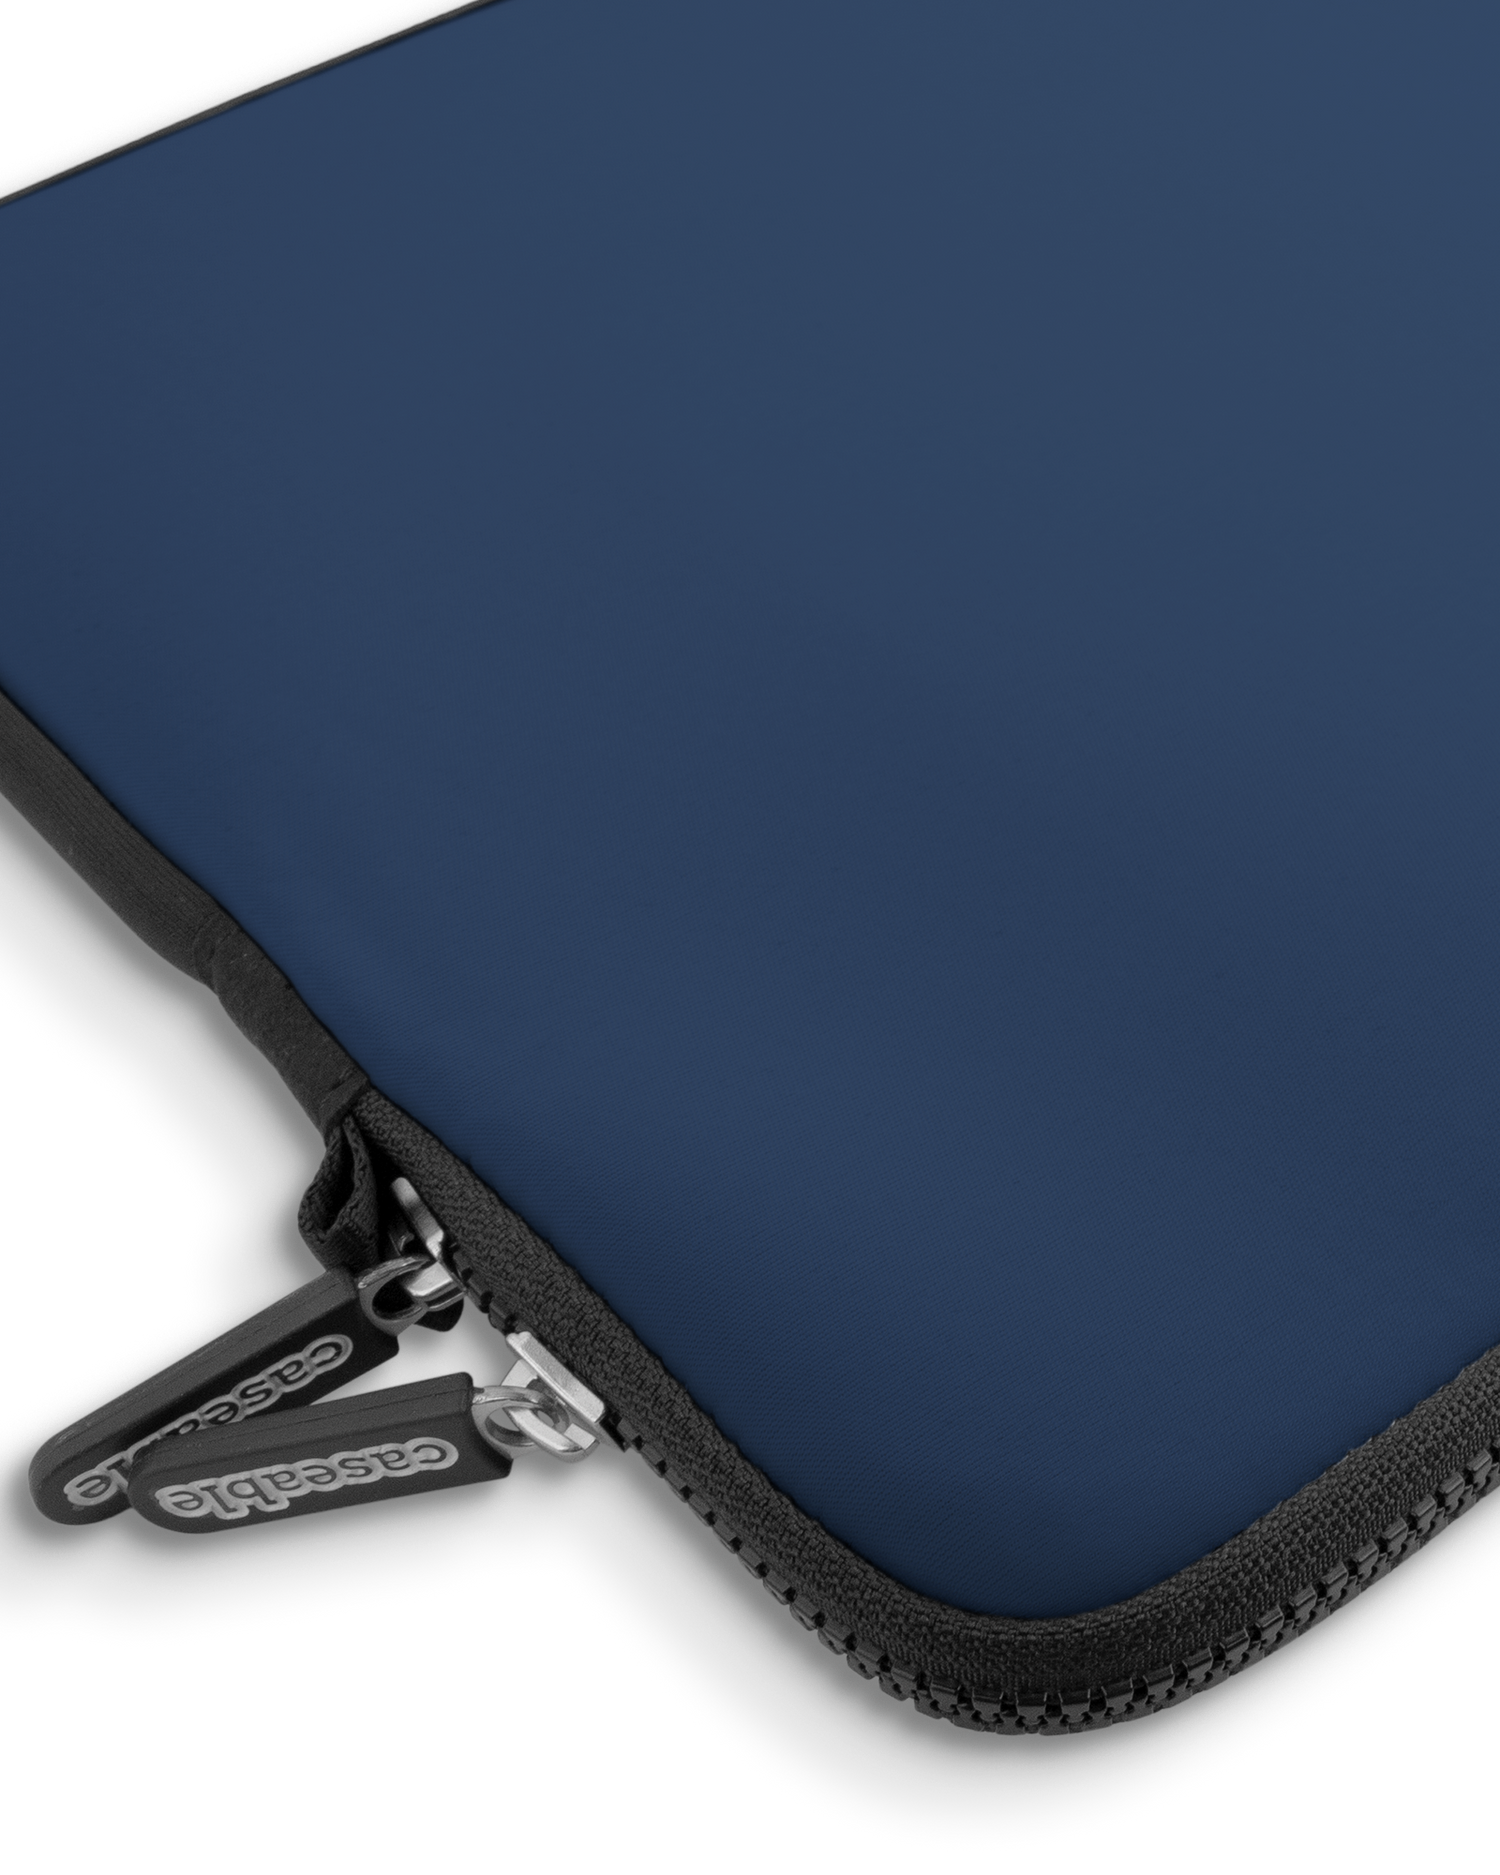 NAVY Premium Laptoptasche 15 Zoll mit Gerät im Inneren